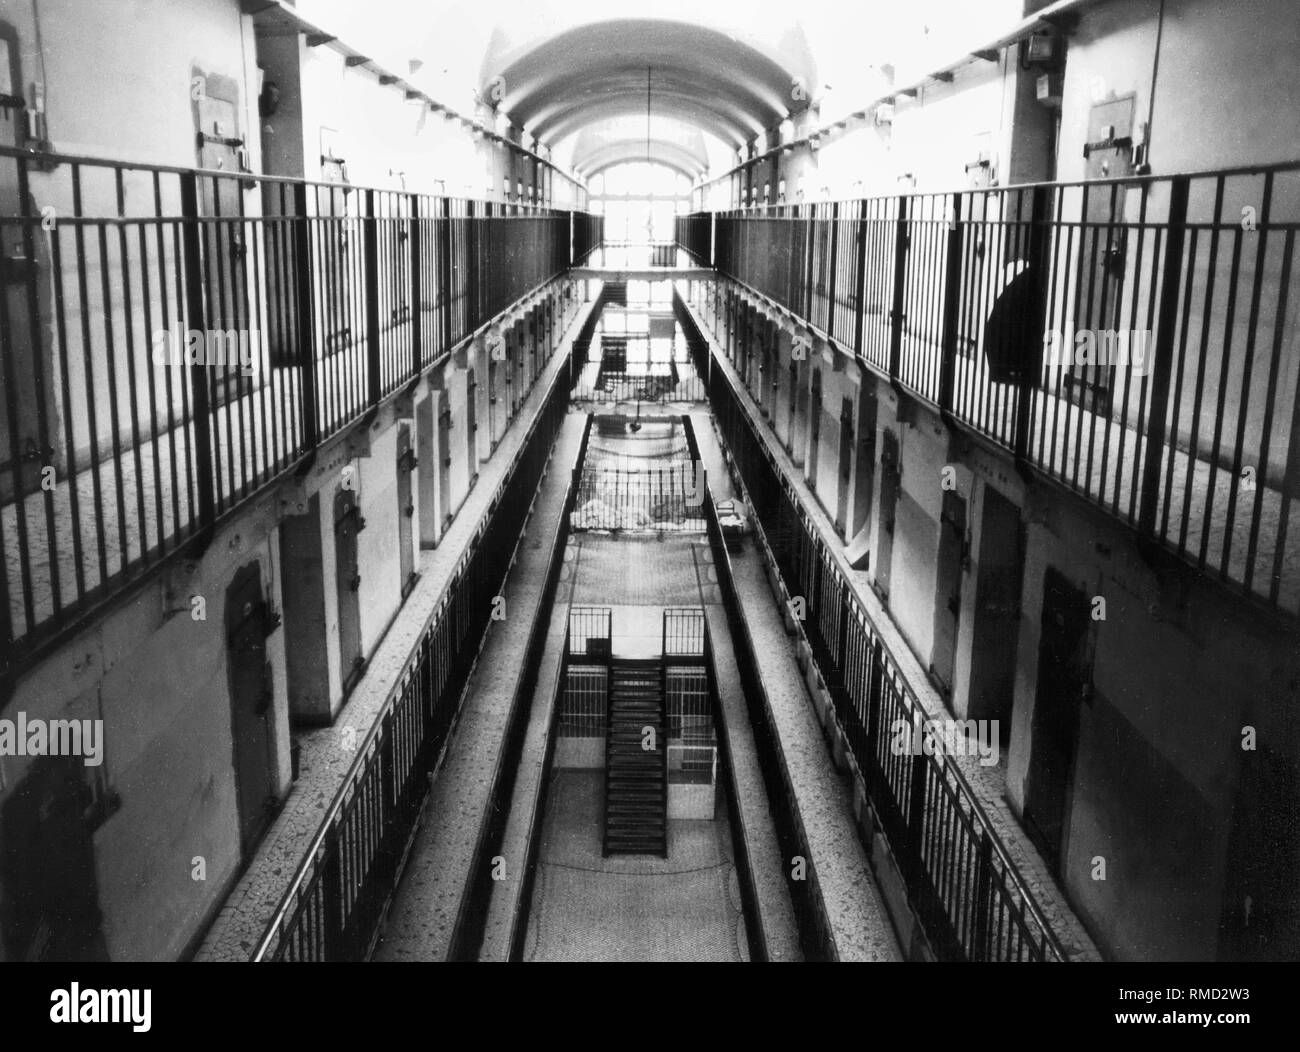 The Fresnes Prison near Paris. Stock Photo